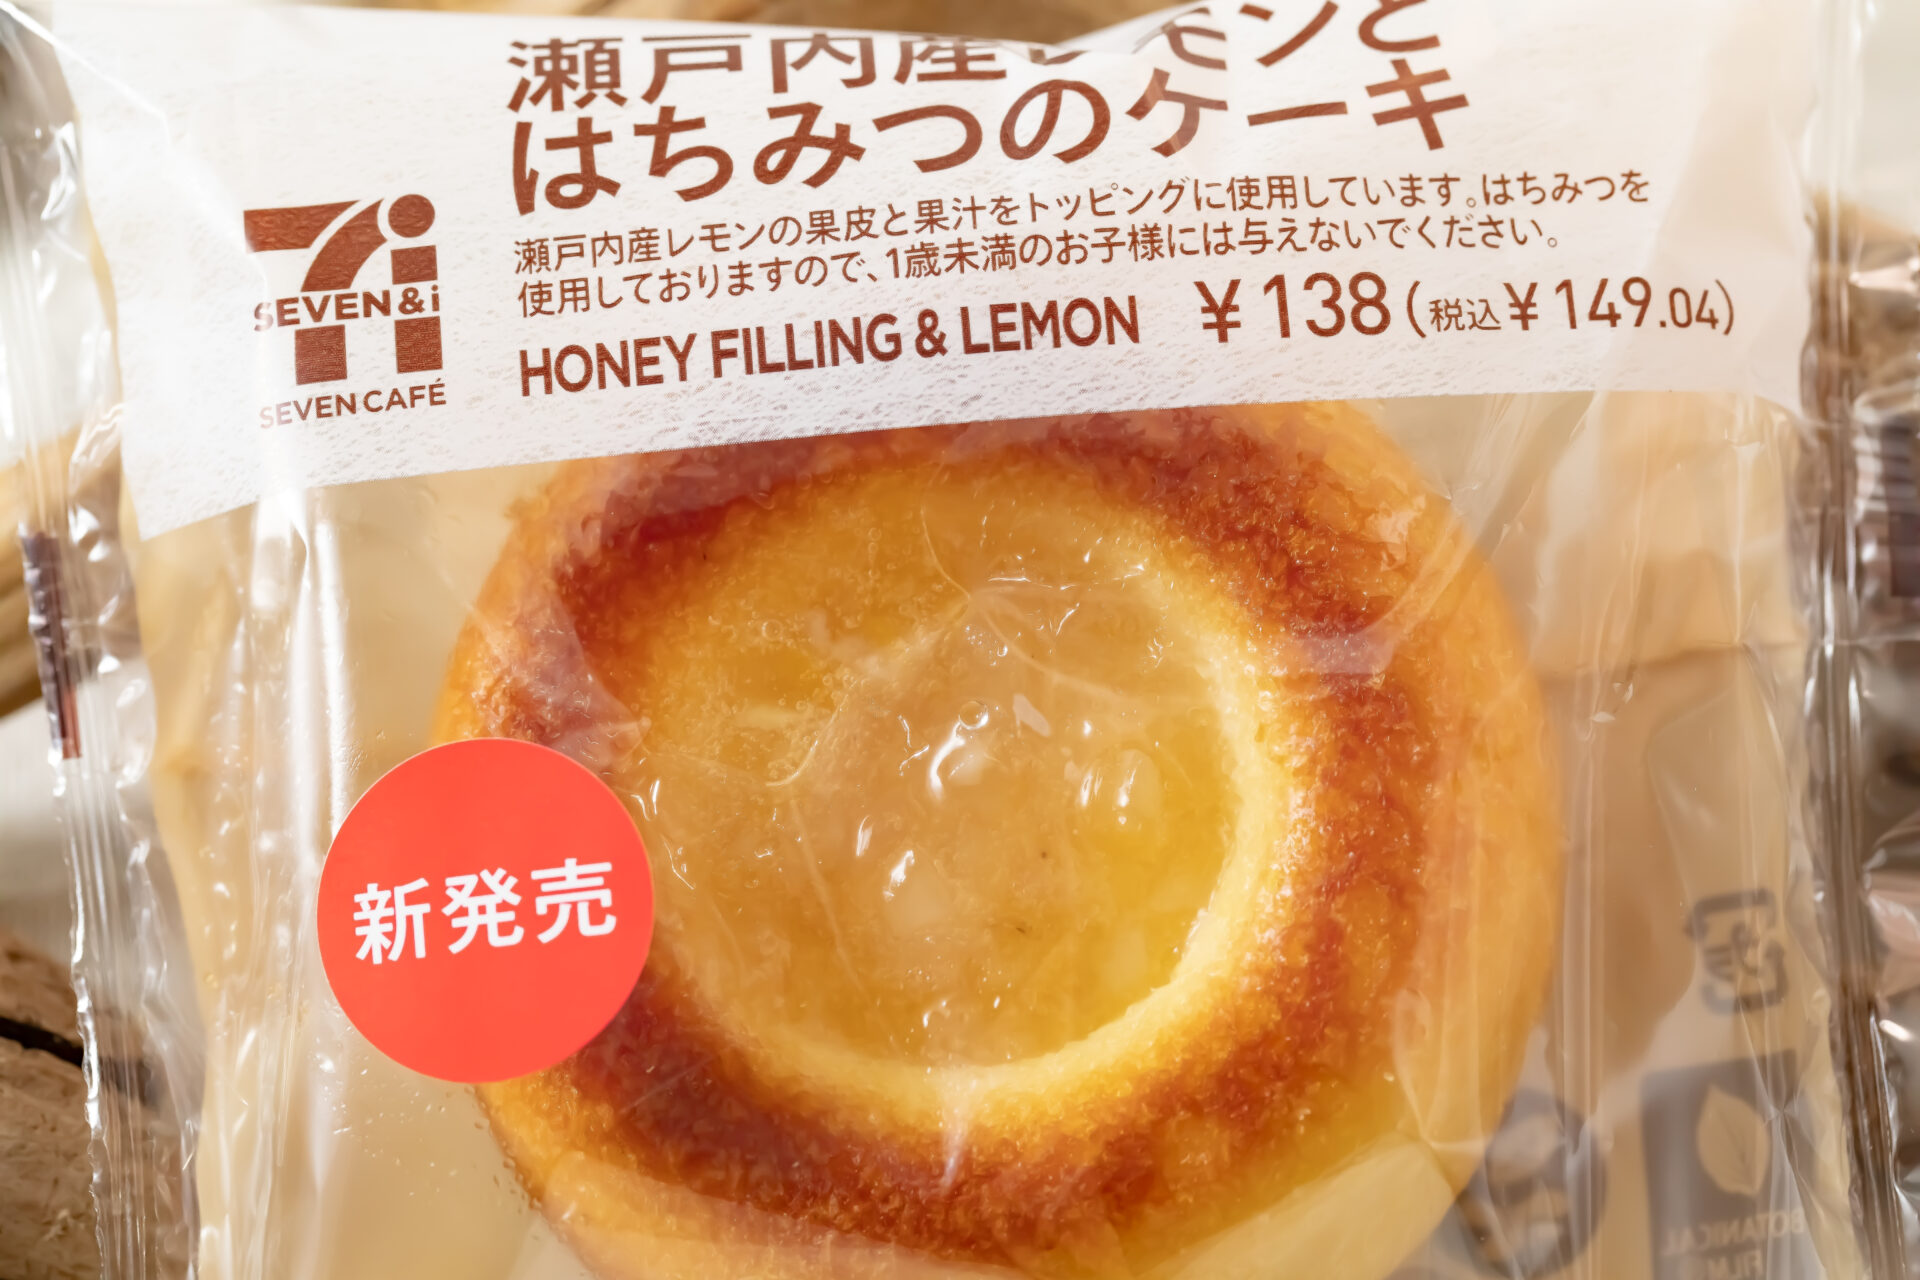 セブン-イレブン『瀬戸内産レモンとはちみつのケーキ』